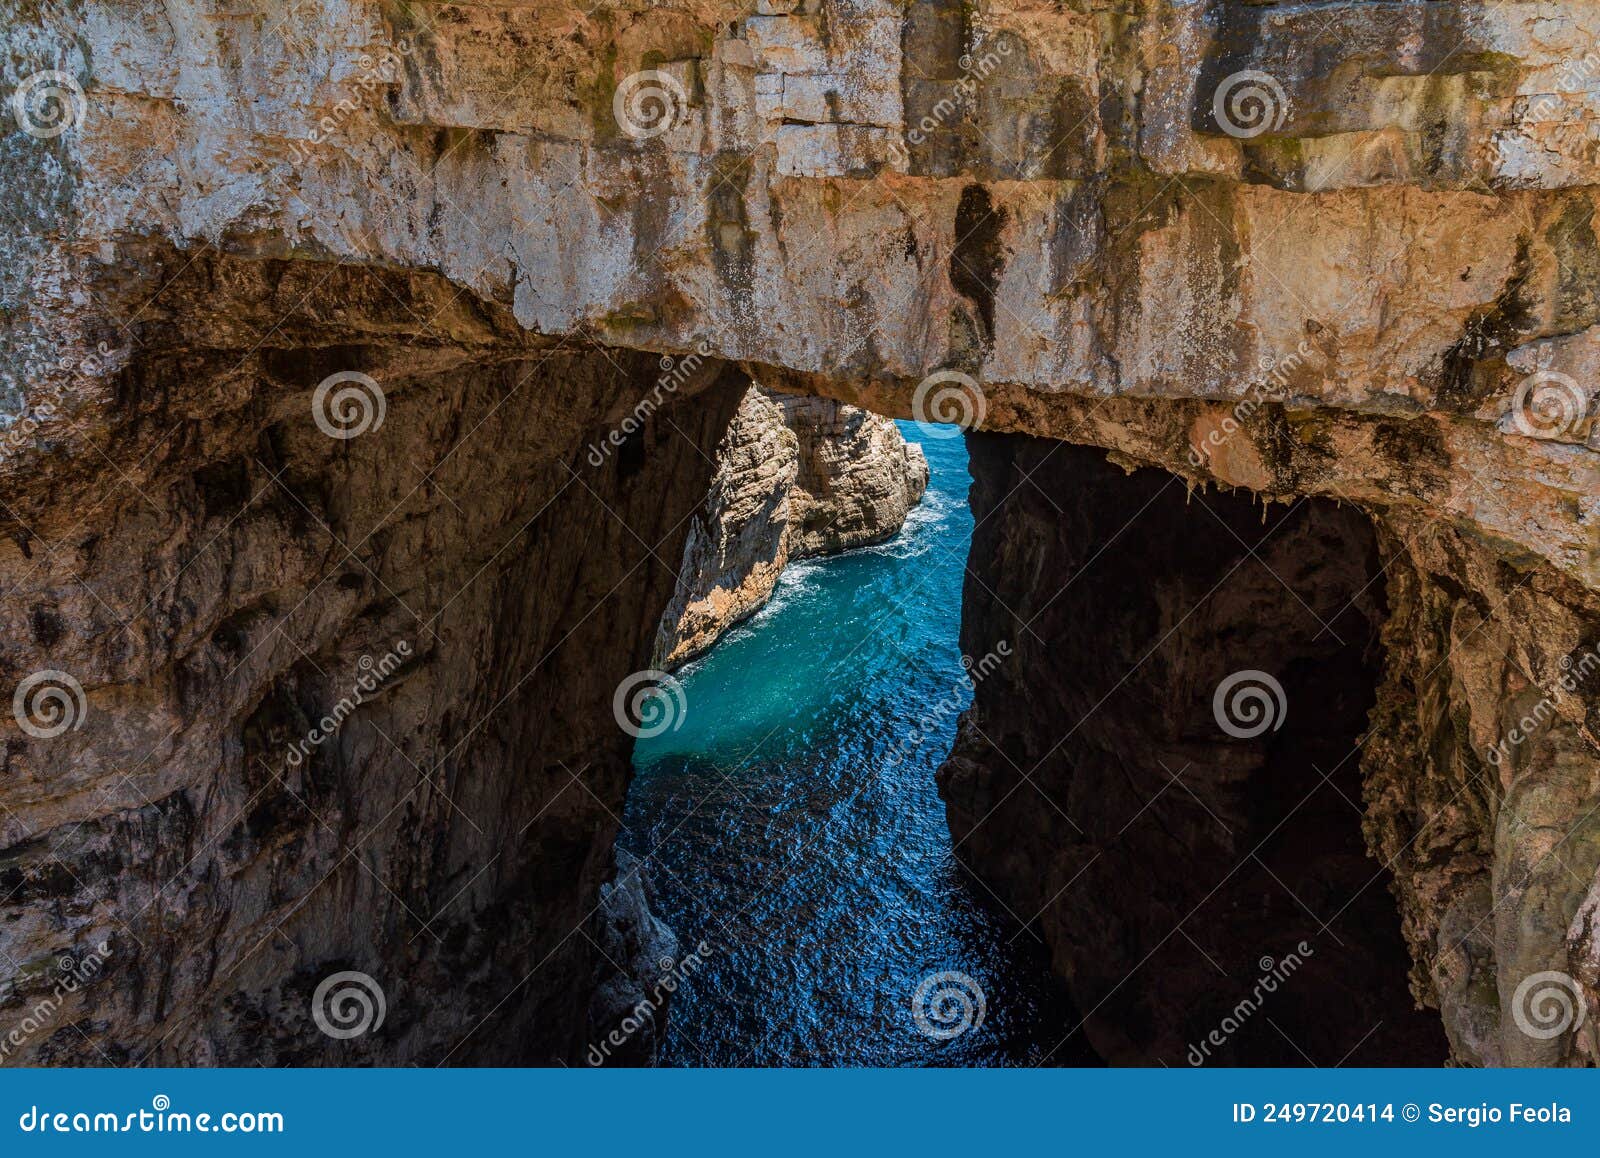 gaeta, lazio. the grotta del turco